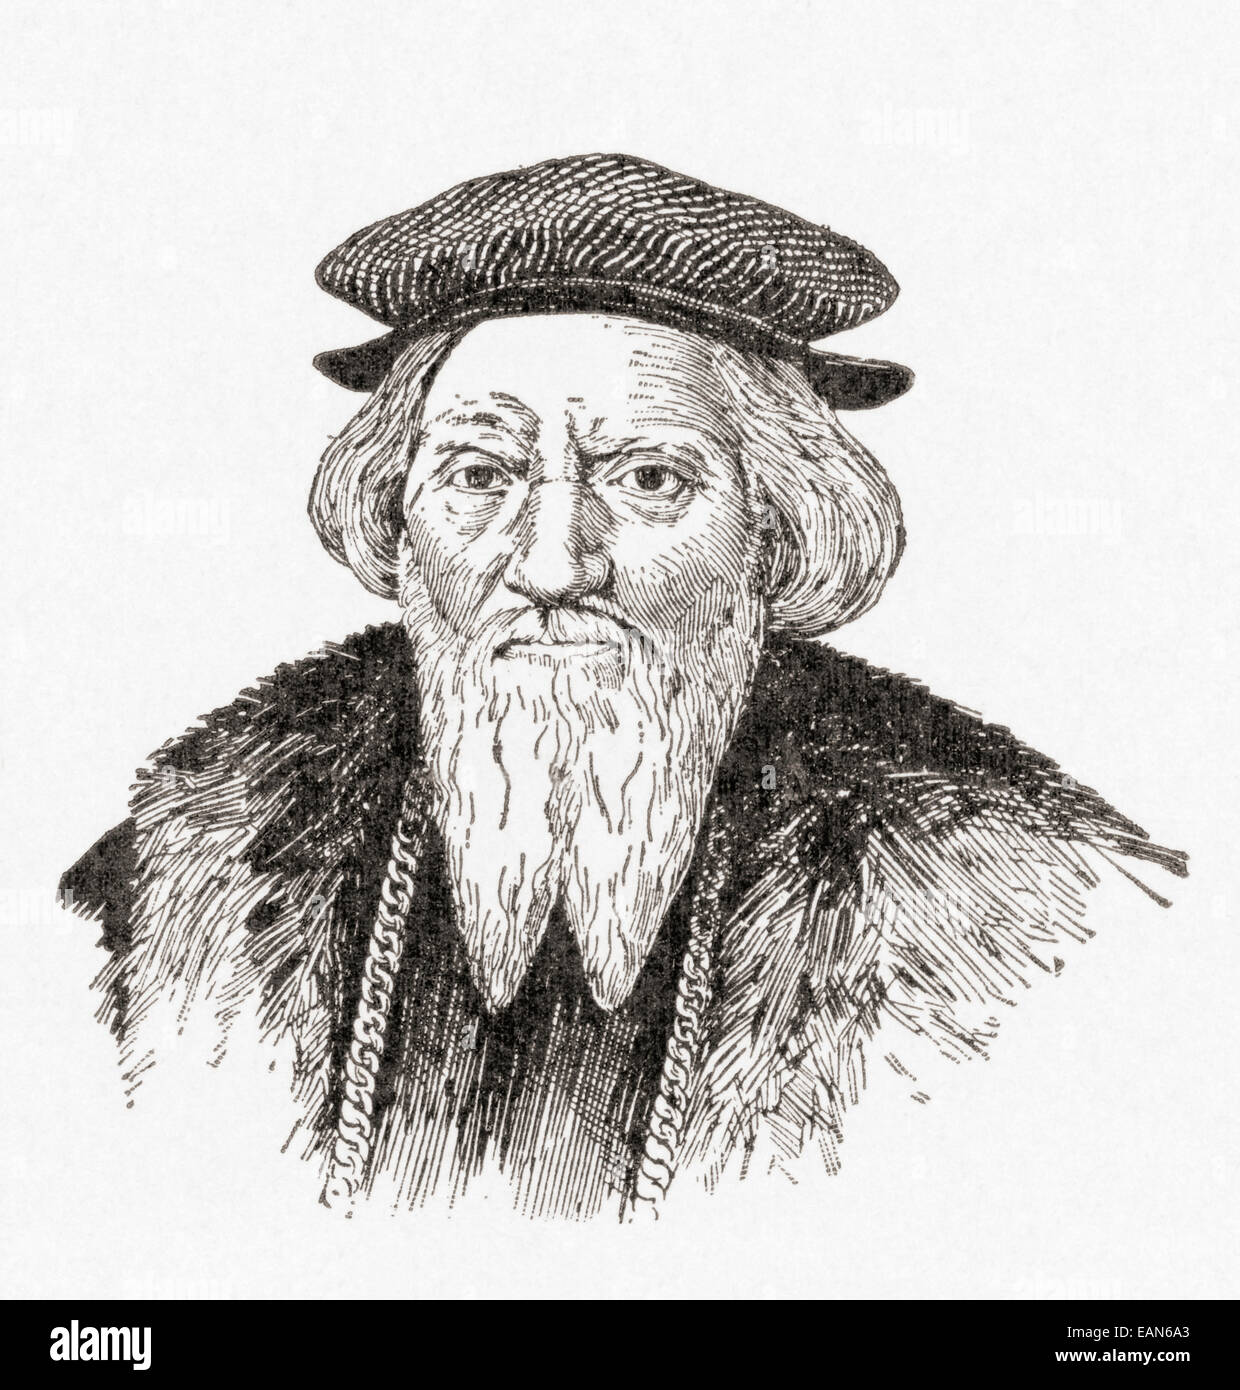 Sébastien Cabot,c. 1474 - c. 1557. L'explorateur italien. Banque D'Images